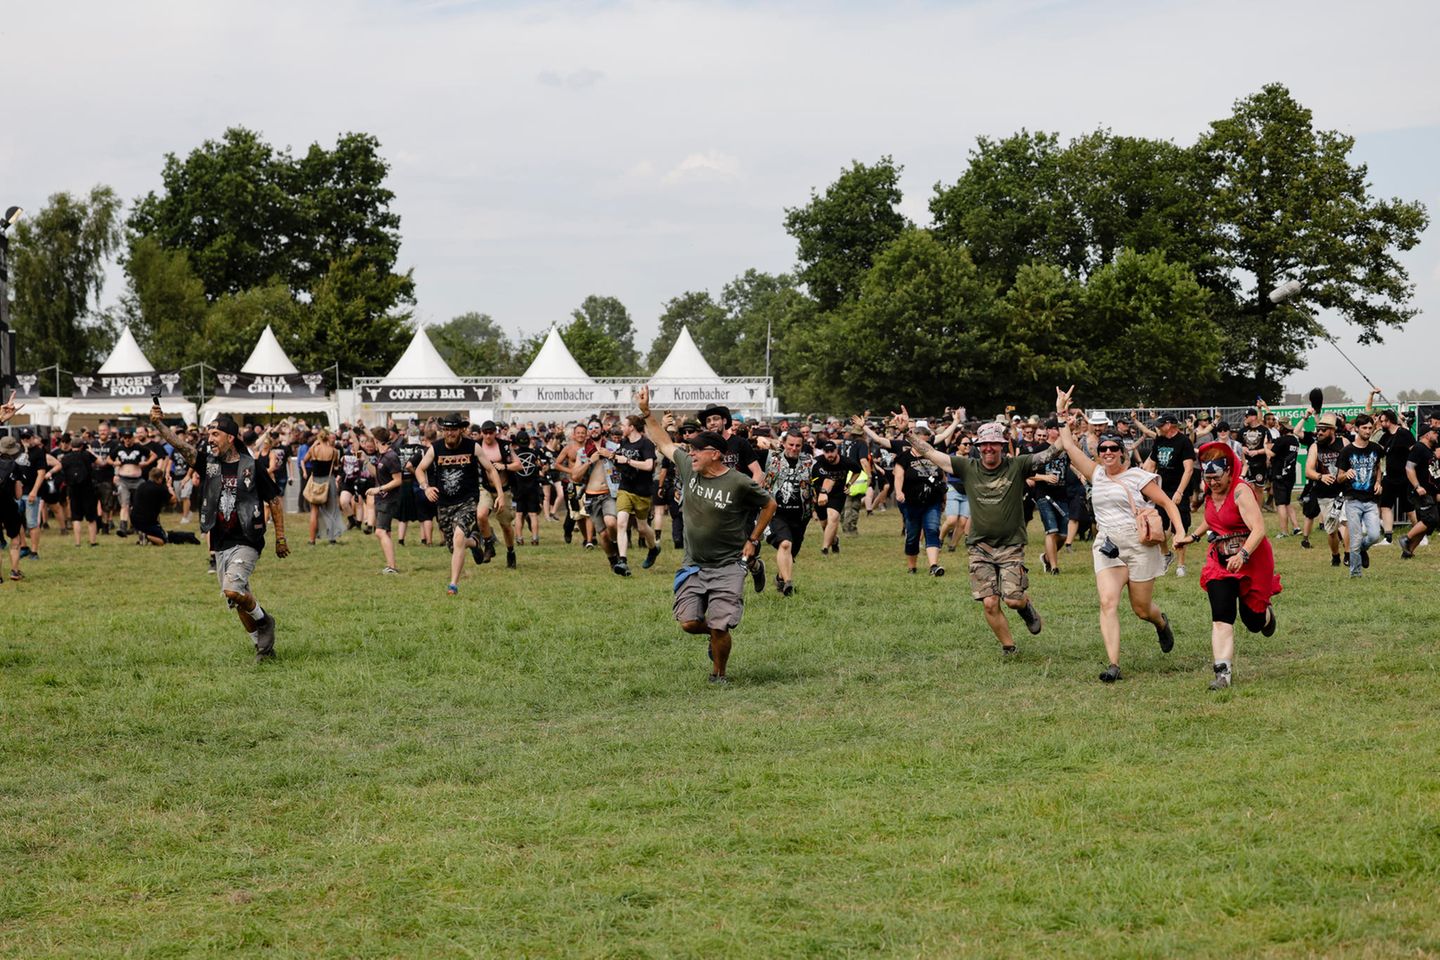 Auf die Plätze, fertig, los: Am Donnerstag begann offiziell das größte Heavy-Metal-Festival der Welt, das Wacken Open Air (WOA). Tausende von Fans warteten ungeduldig auf die Eröffnung des Infields und stürmten nach dem Startschuss das Festivalgelände.